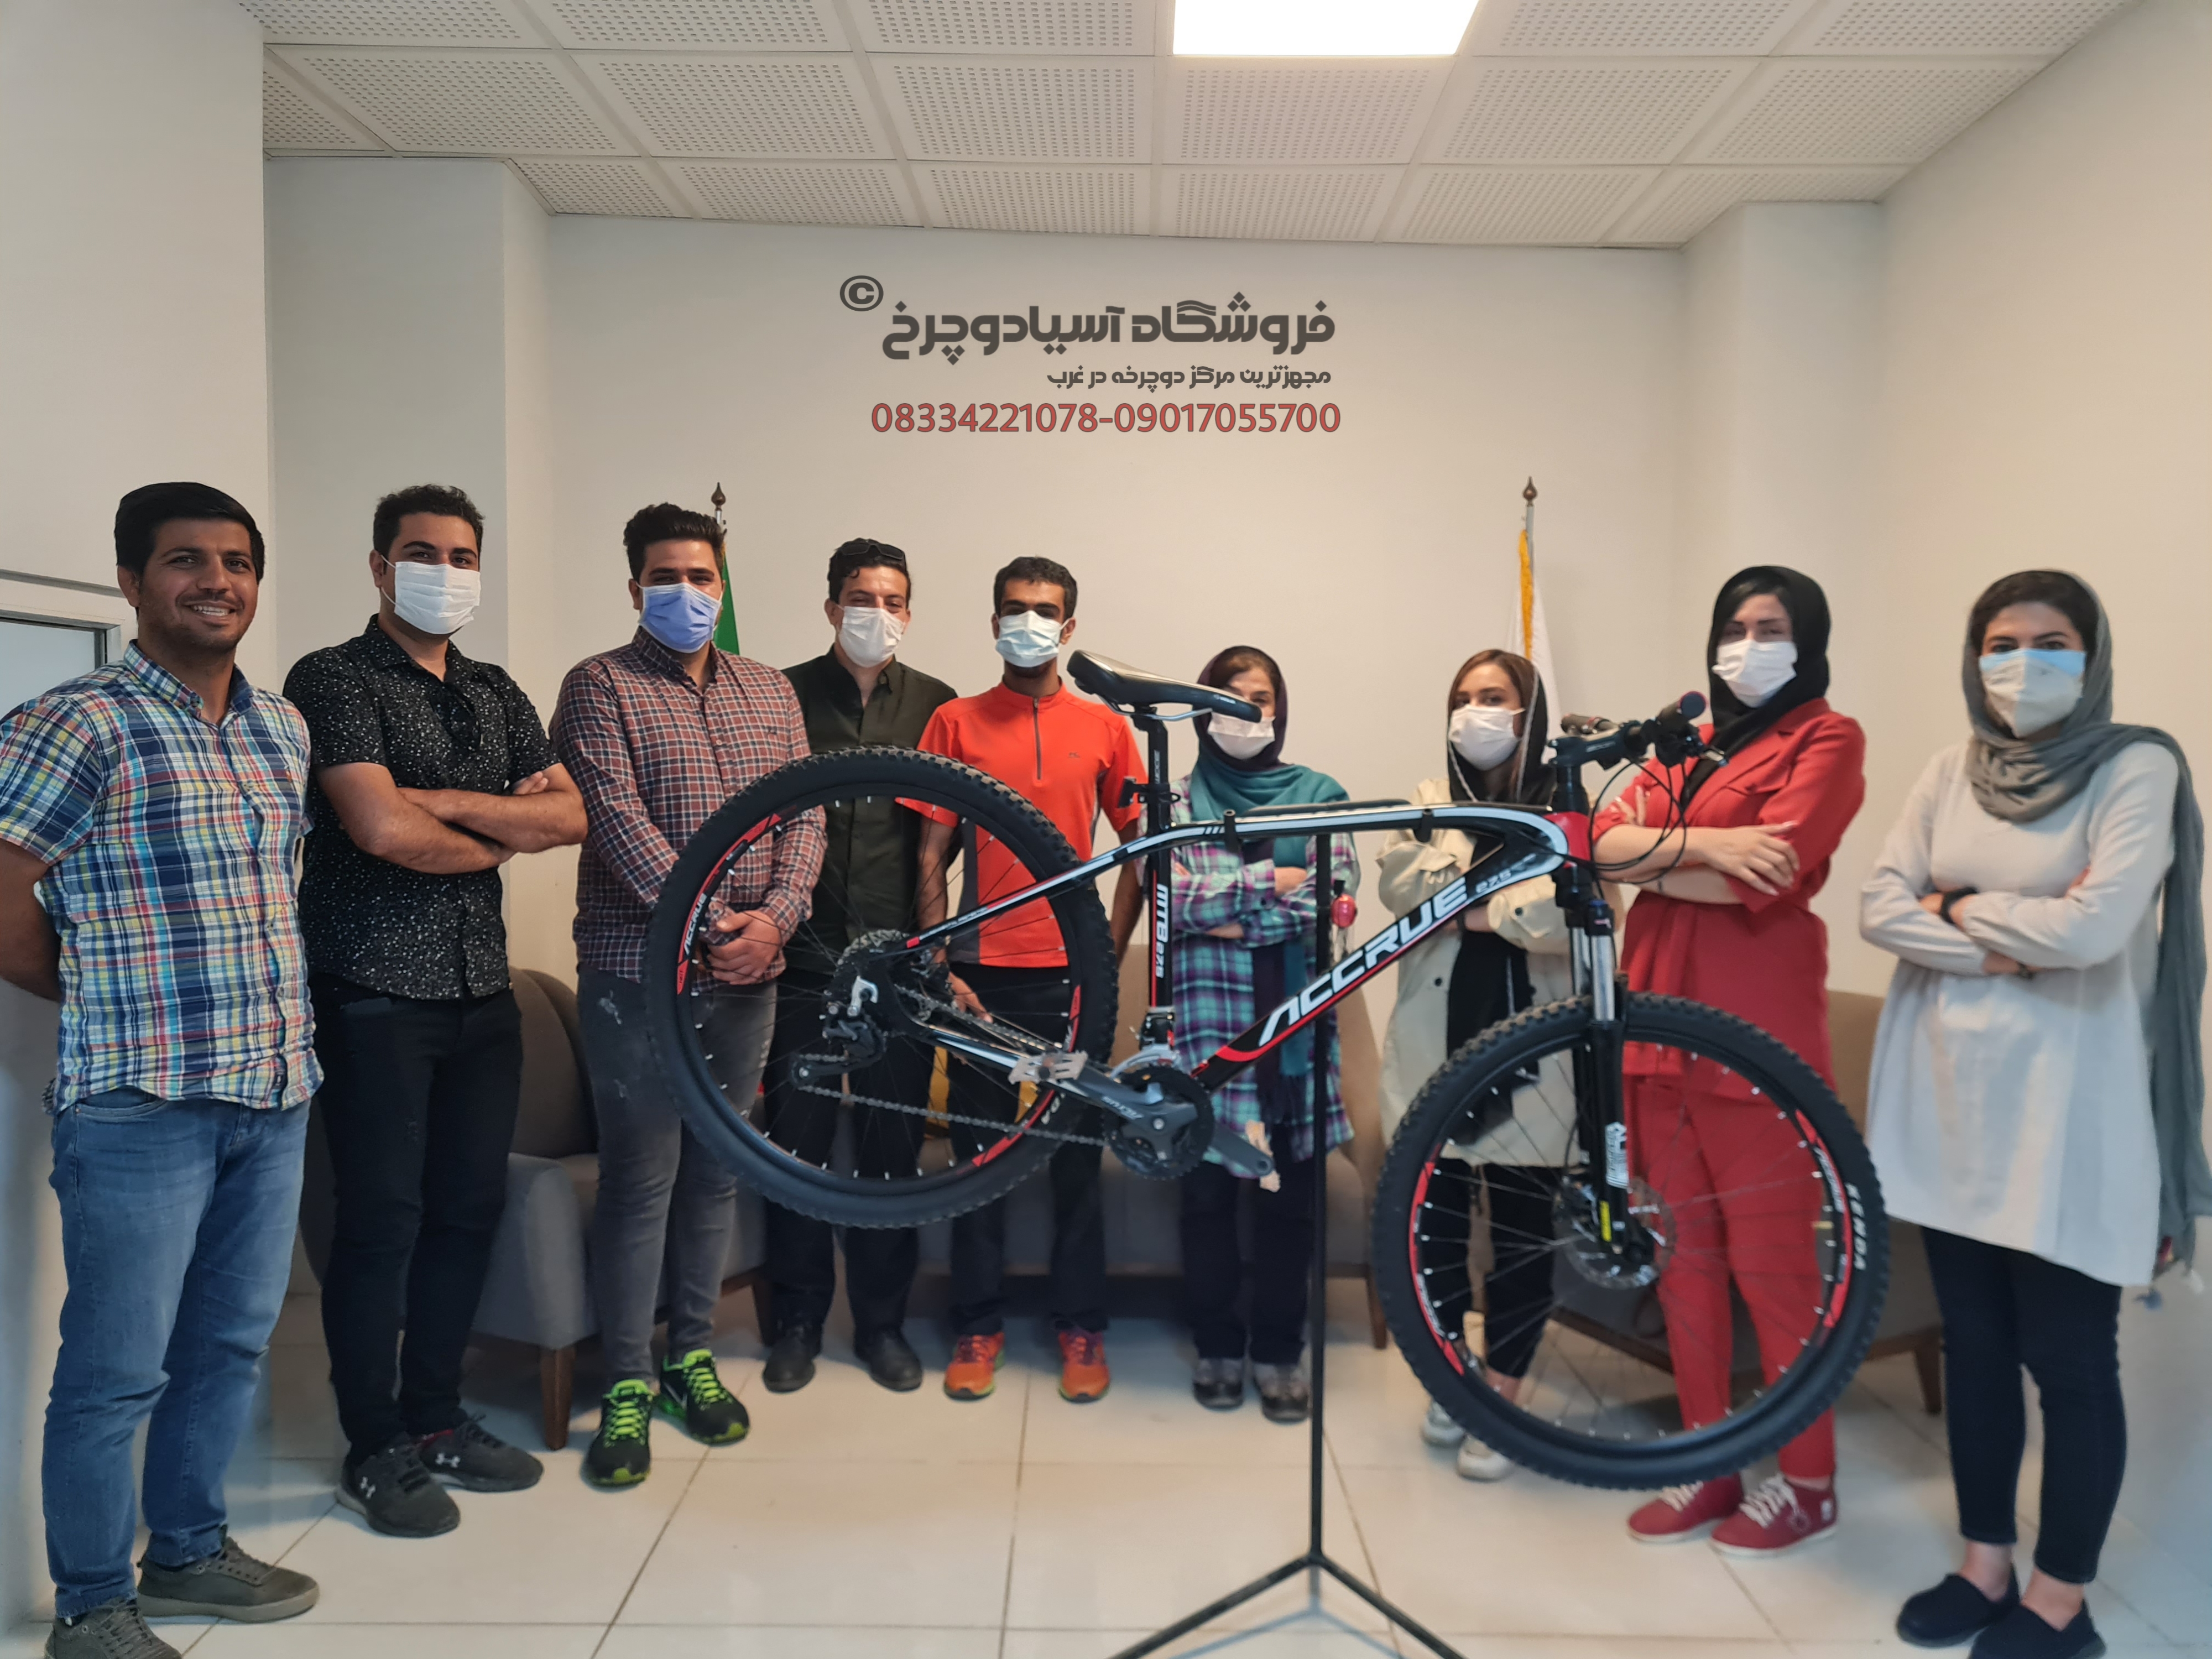 کلاس آموزشی دوچرخه سواری در استان کرمانشاه 09017055700